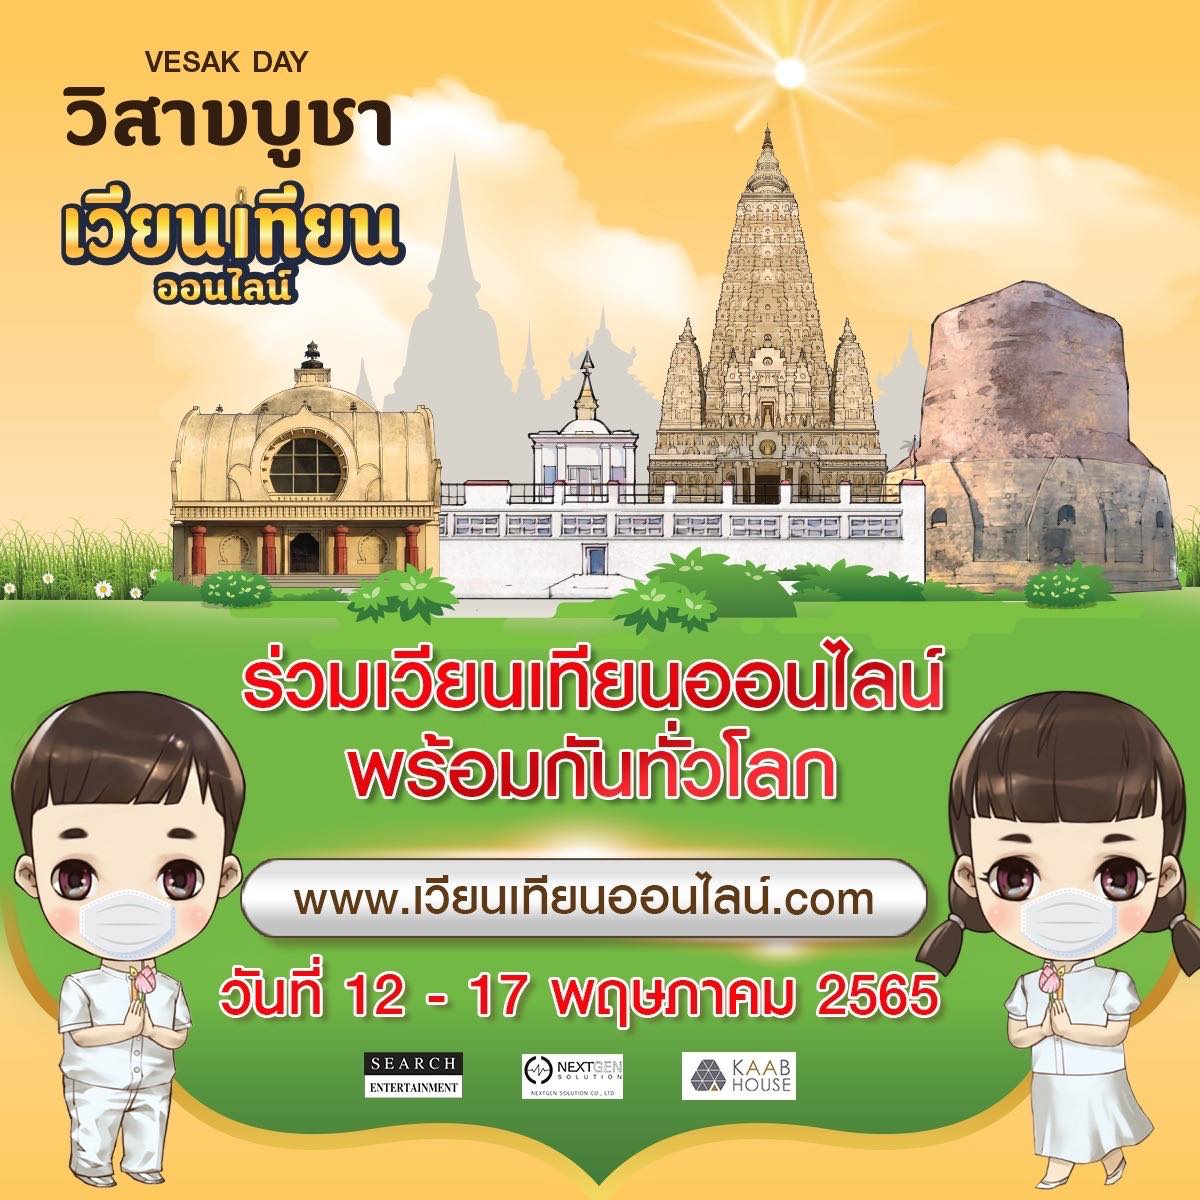 เวียนเทียนออนไลน์ วันวิสาขบูชา 2565 เลือกสถานที่ทั้งวัดในไทย-วัดไทยในต่างประเทศ